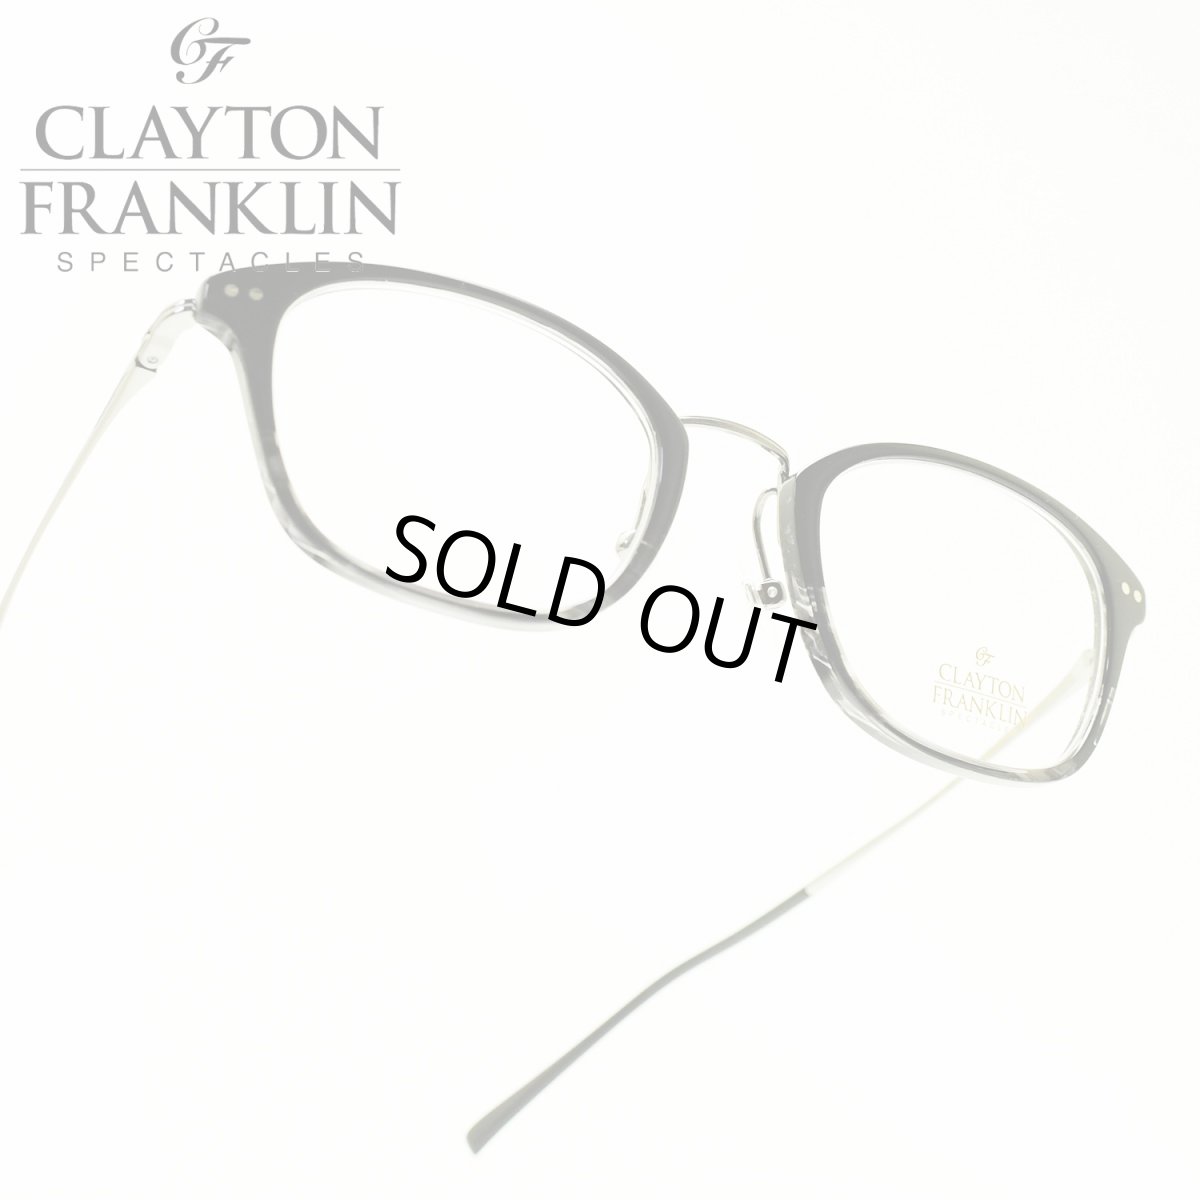 画像1: CLAYTON FRANKLIN クレイトンフランクリン 628 BKGH ブラックグレーハーフ/デモレンズ メガネ 眼鏡 めがね メンズ レディース おしゃれ ブランド 人気 おすすめ フレーム 流行り 度付き レンズ (1)